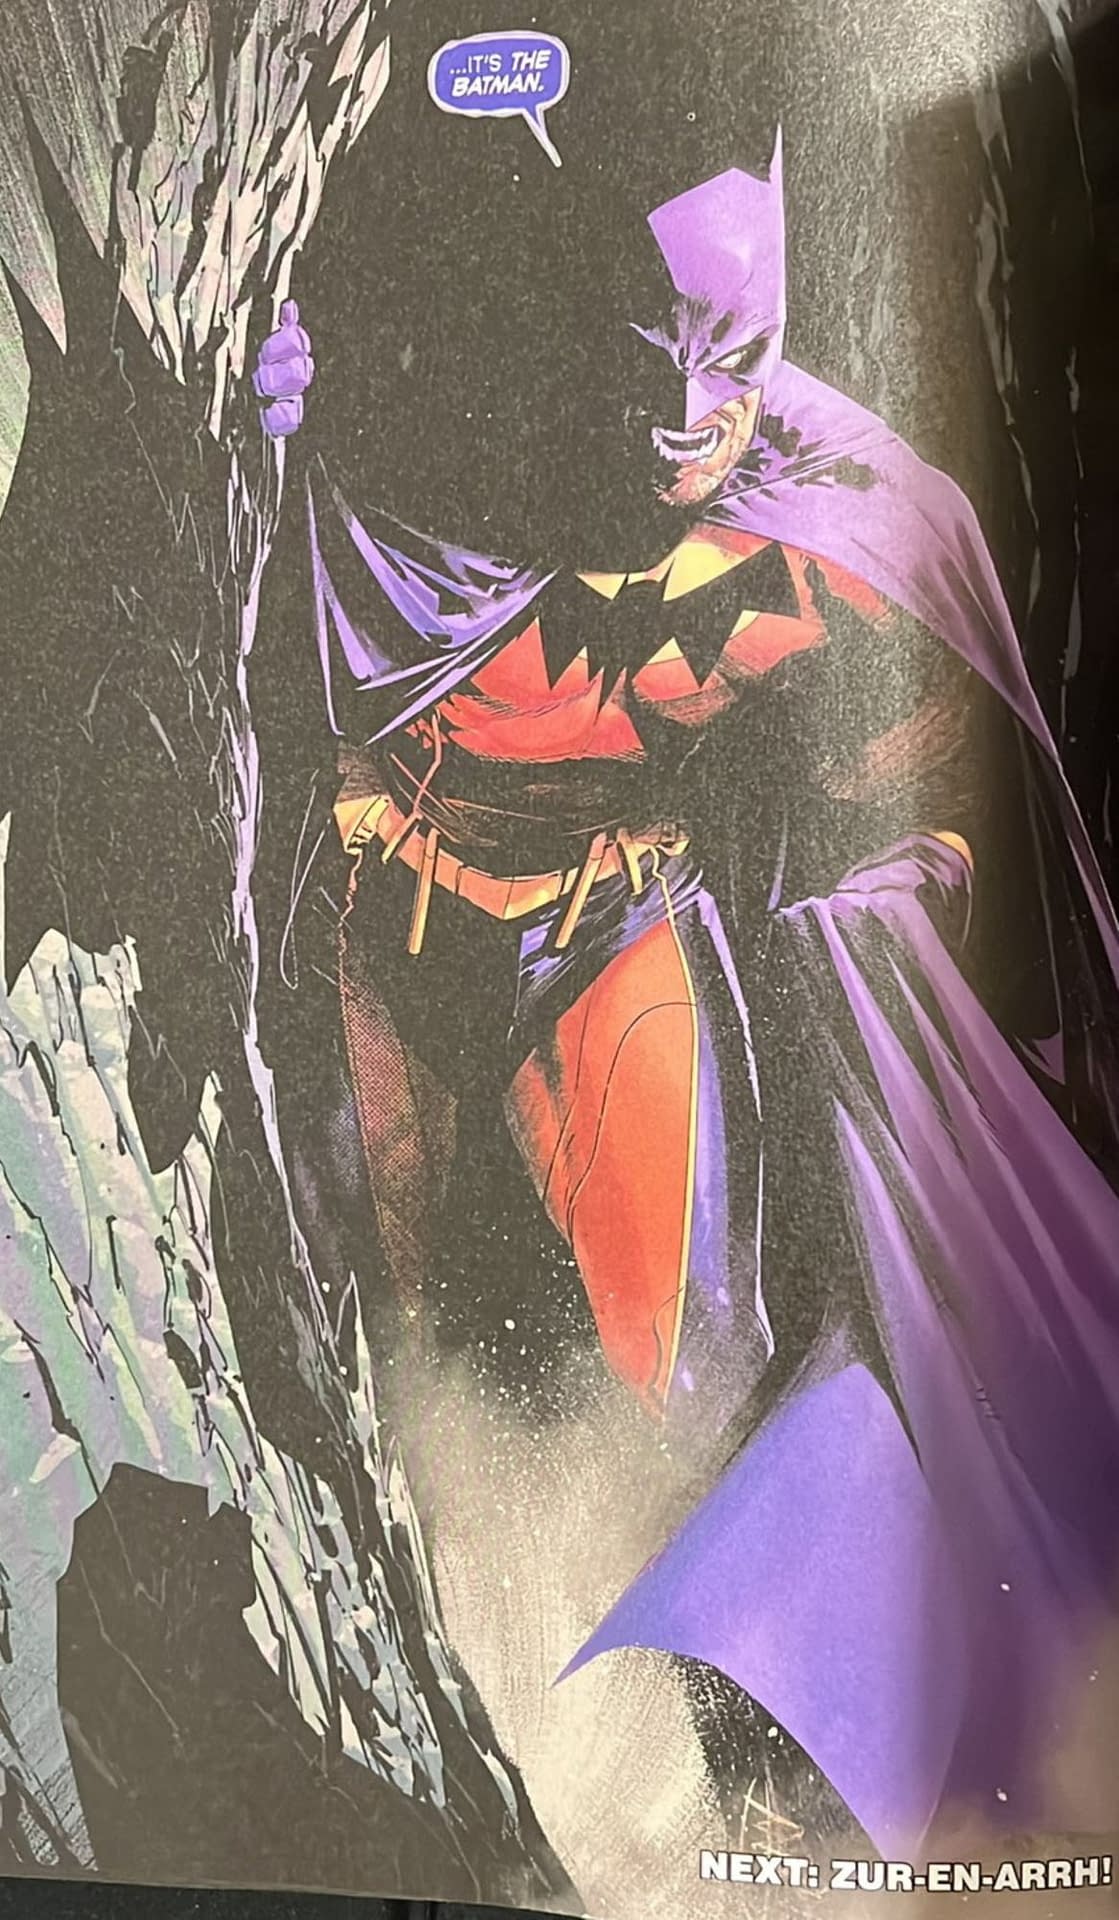 Batman & Detective Comics, Preparing For Grant Morrison? (Spoilers)